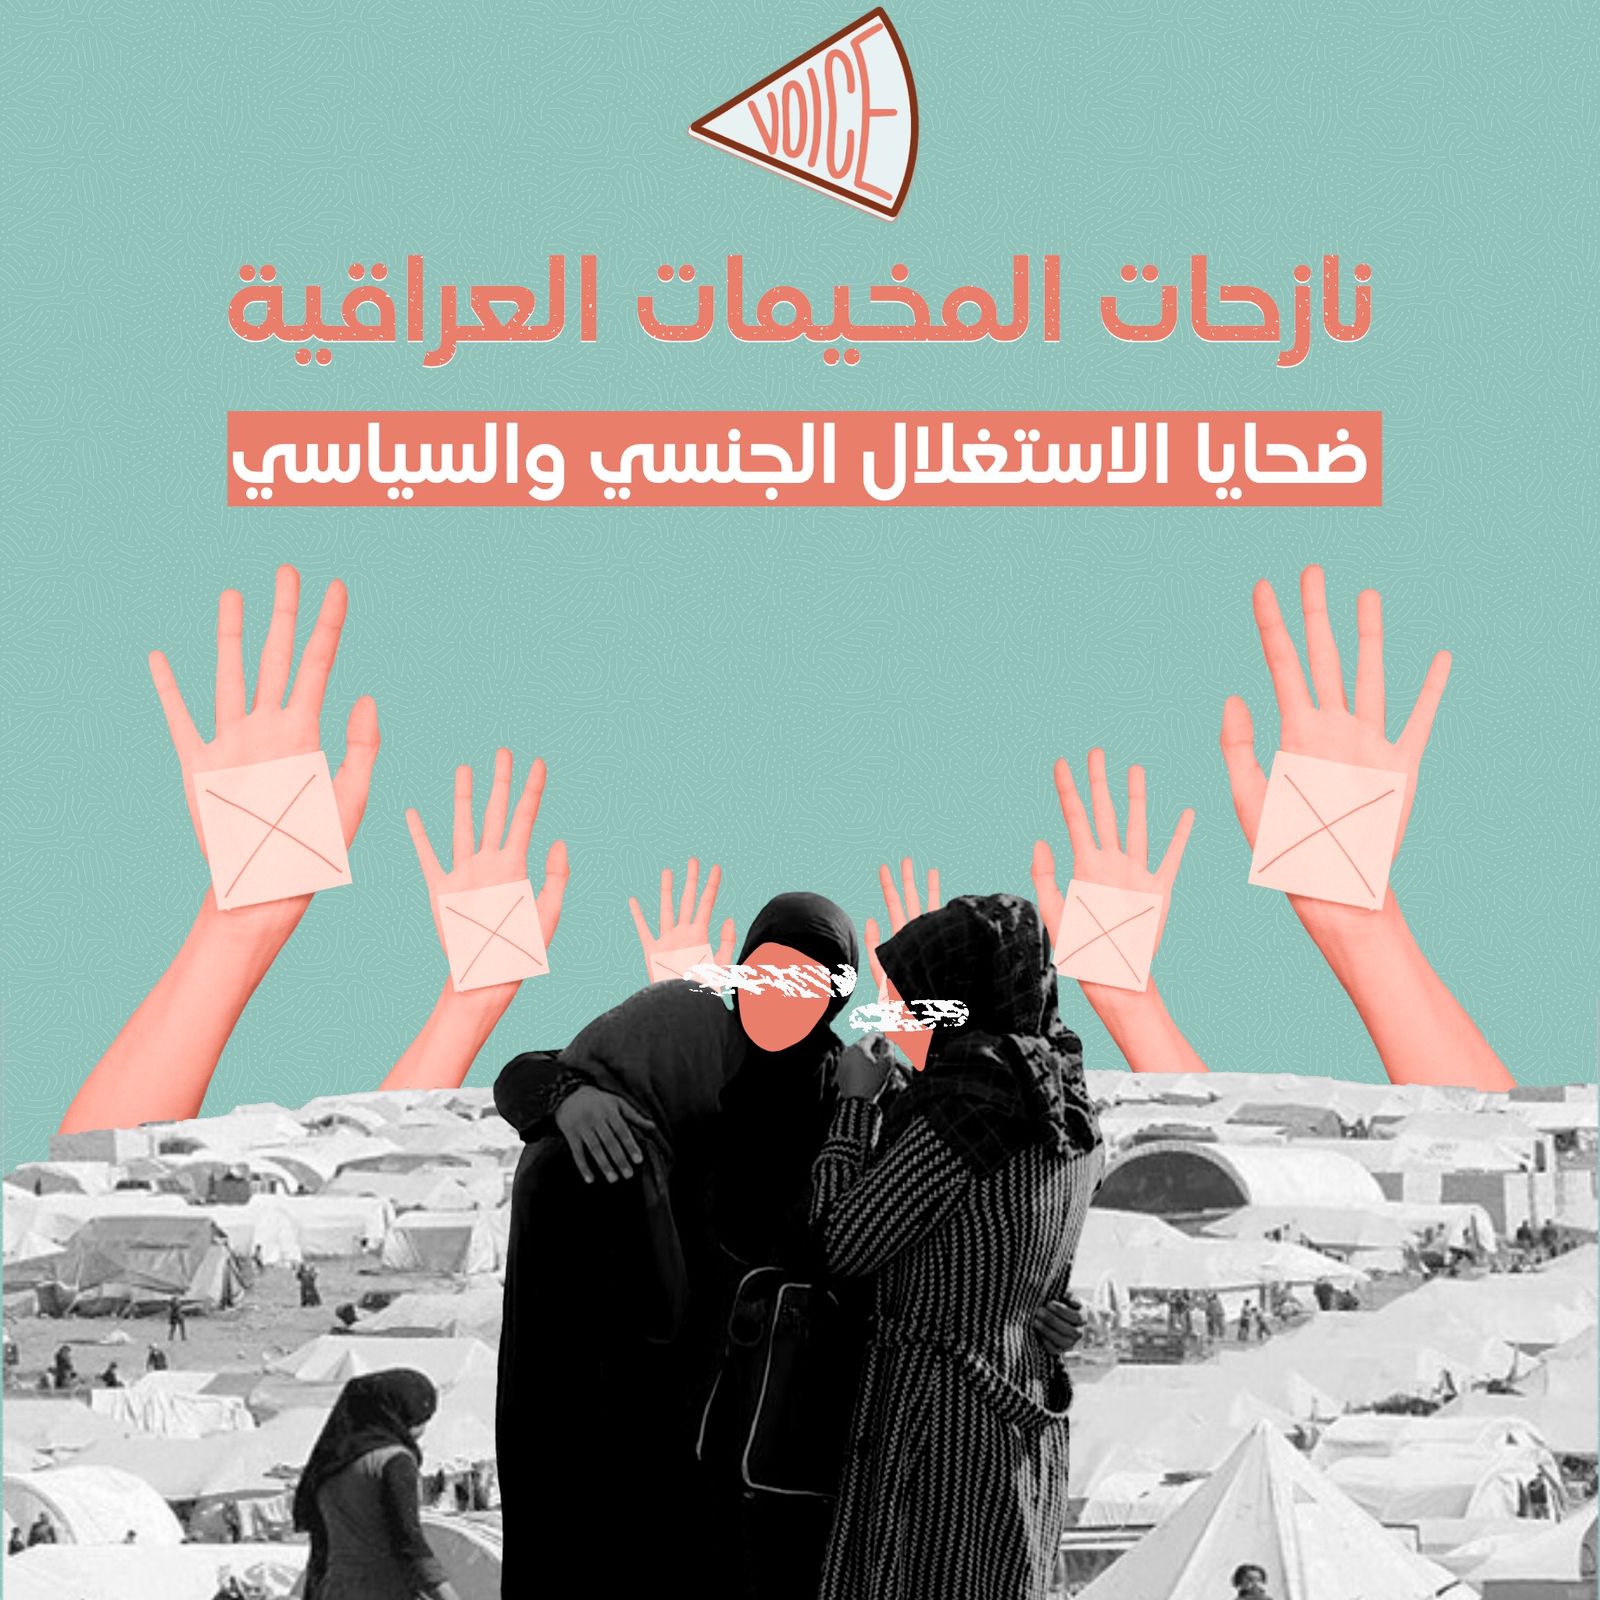 نازحات المخيمات العراقية ضحايا الاستغلال الجنسي والسياسي